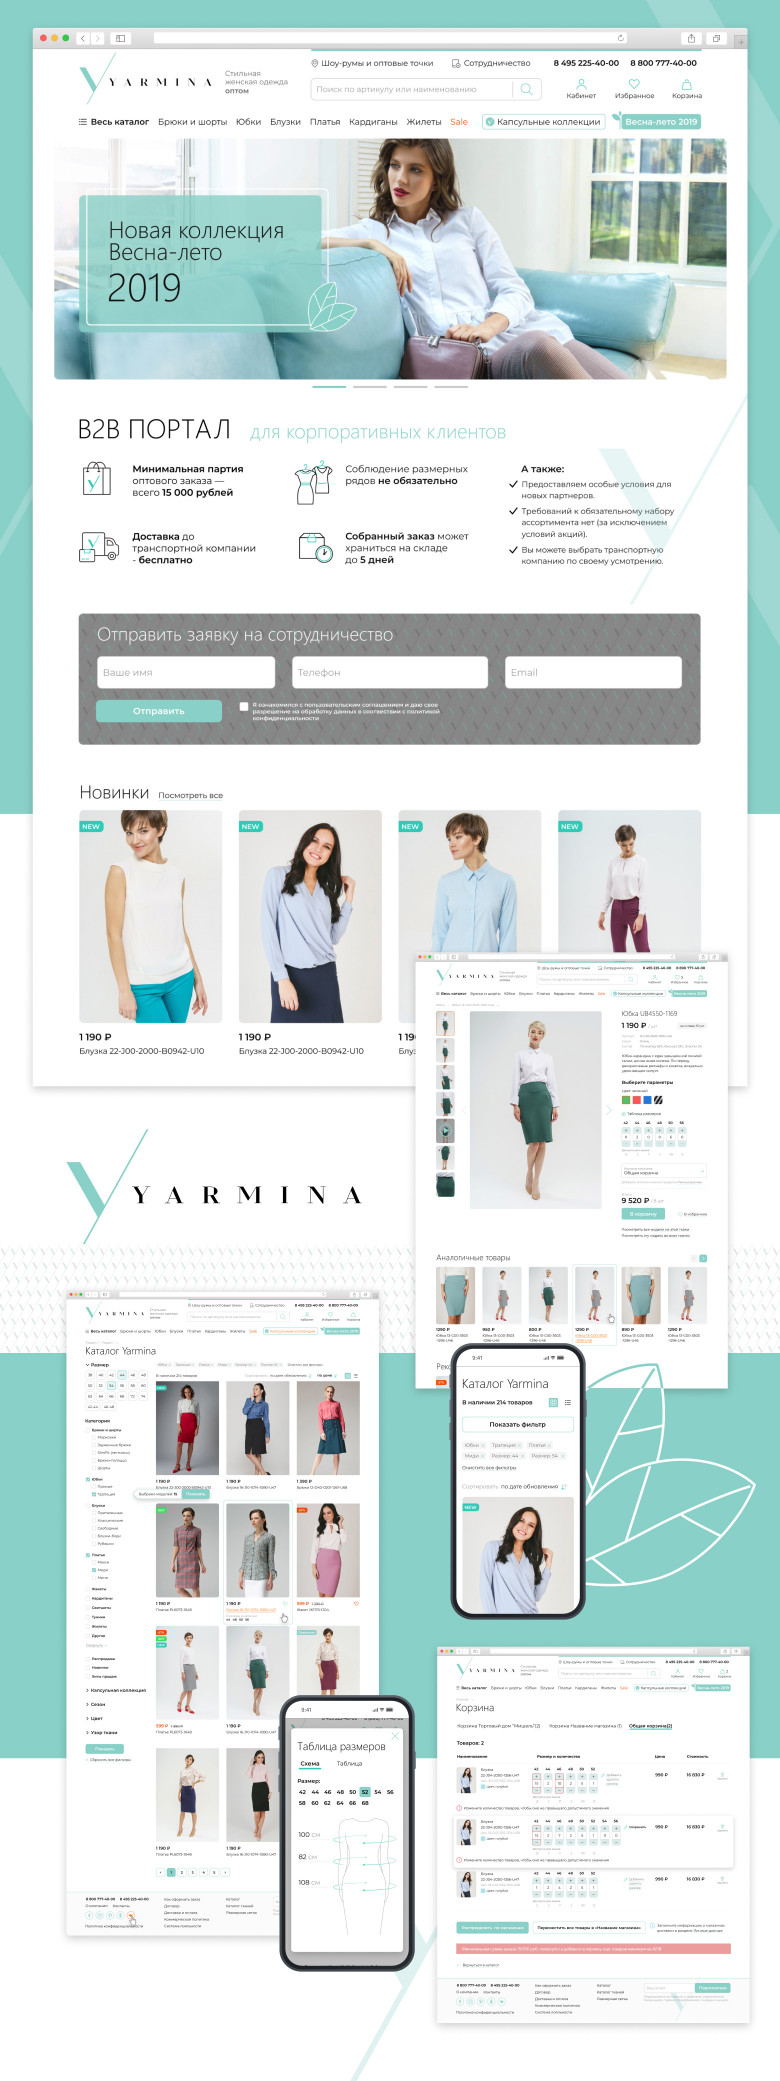 B2B-портал для оптовых покупателей женской одежды бренда Yarmina